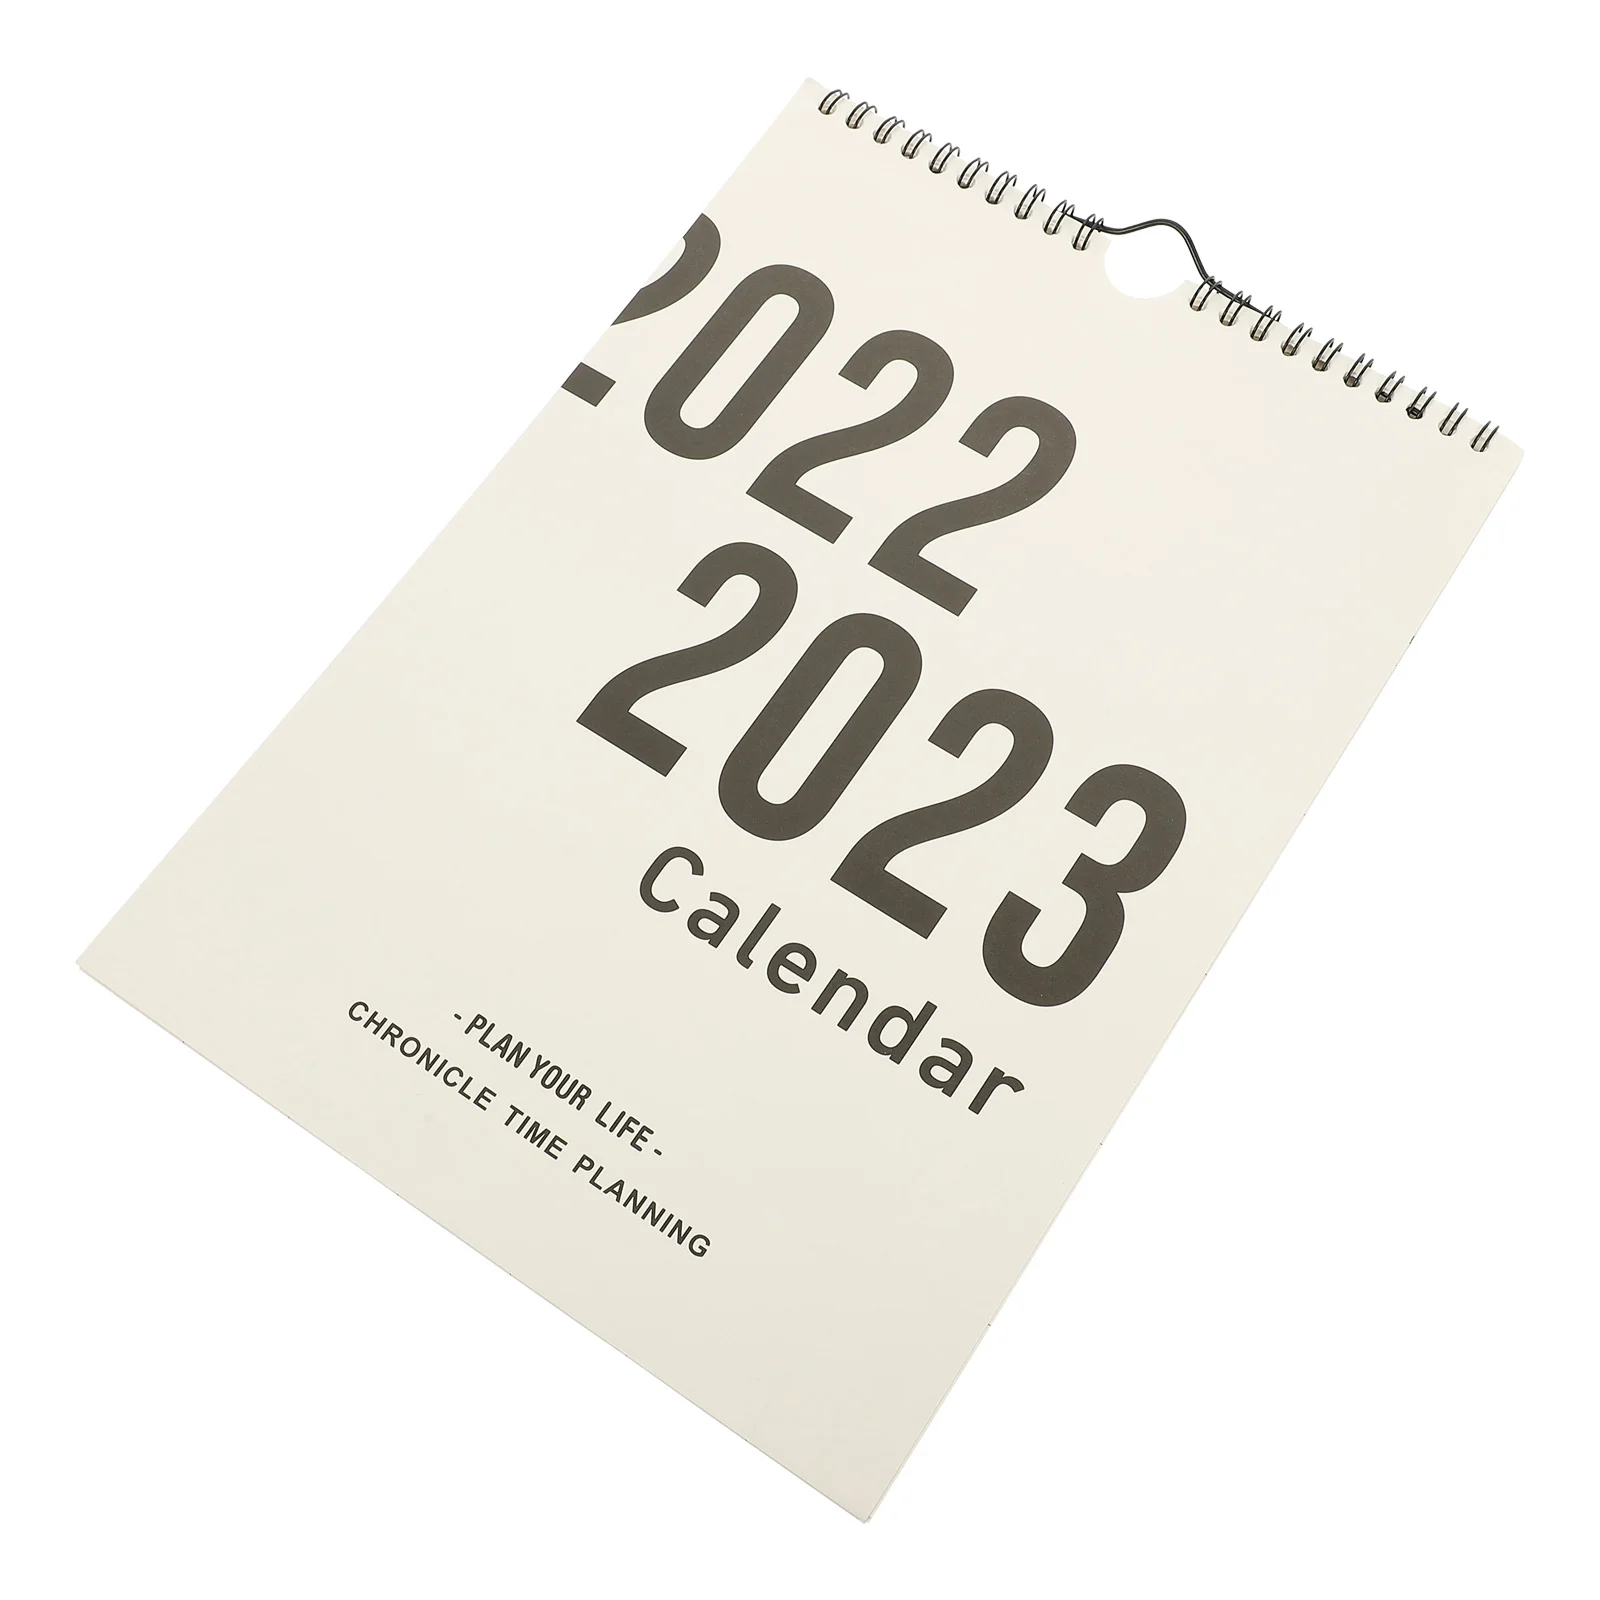 2023 Wall Calendar Wall Hanging Decor 2023 Year Calendar Lunar Calendar Daily Plan Sheet Paper 2023 Schedule Calendar Student